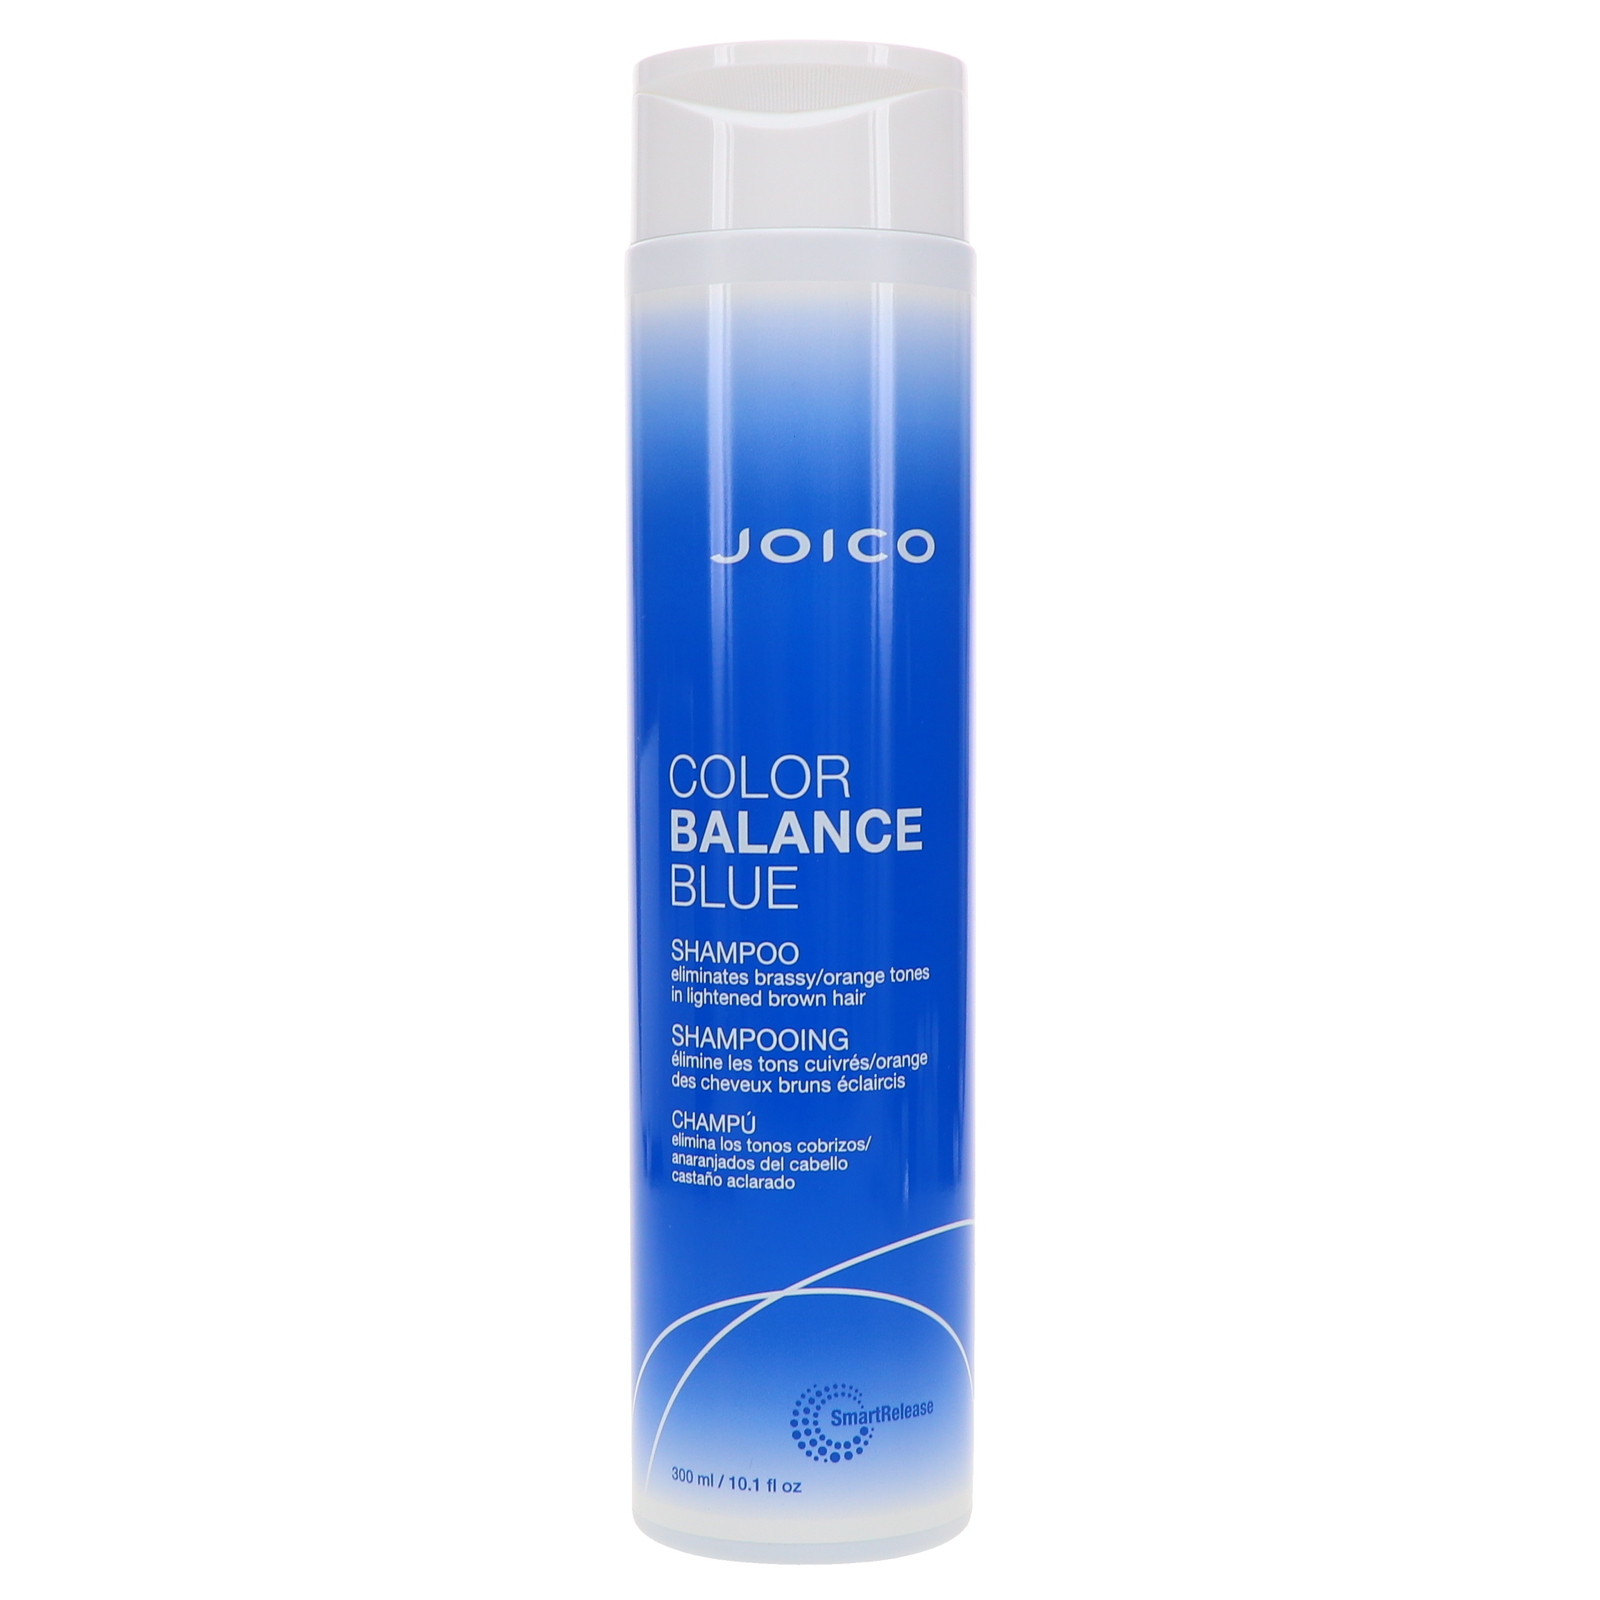 Joico Color Balance Blue Shampoo 10.1oz - $32.40